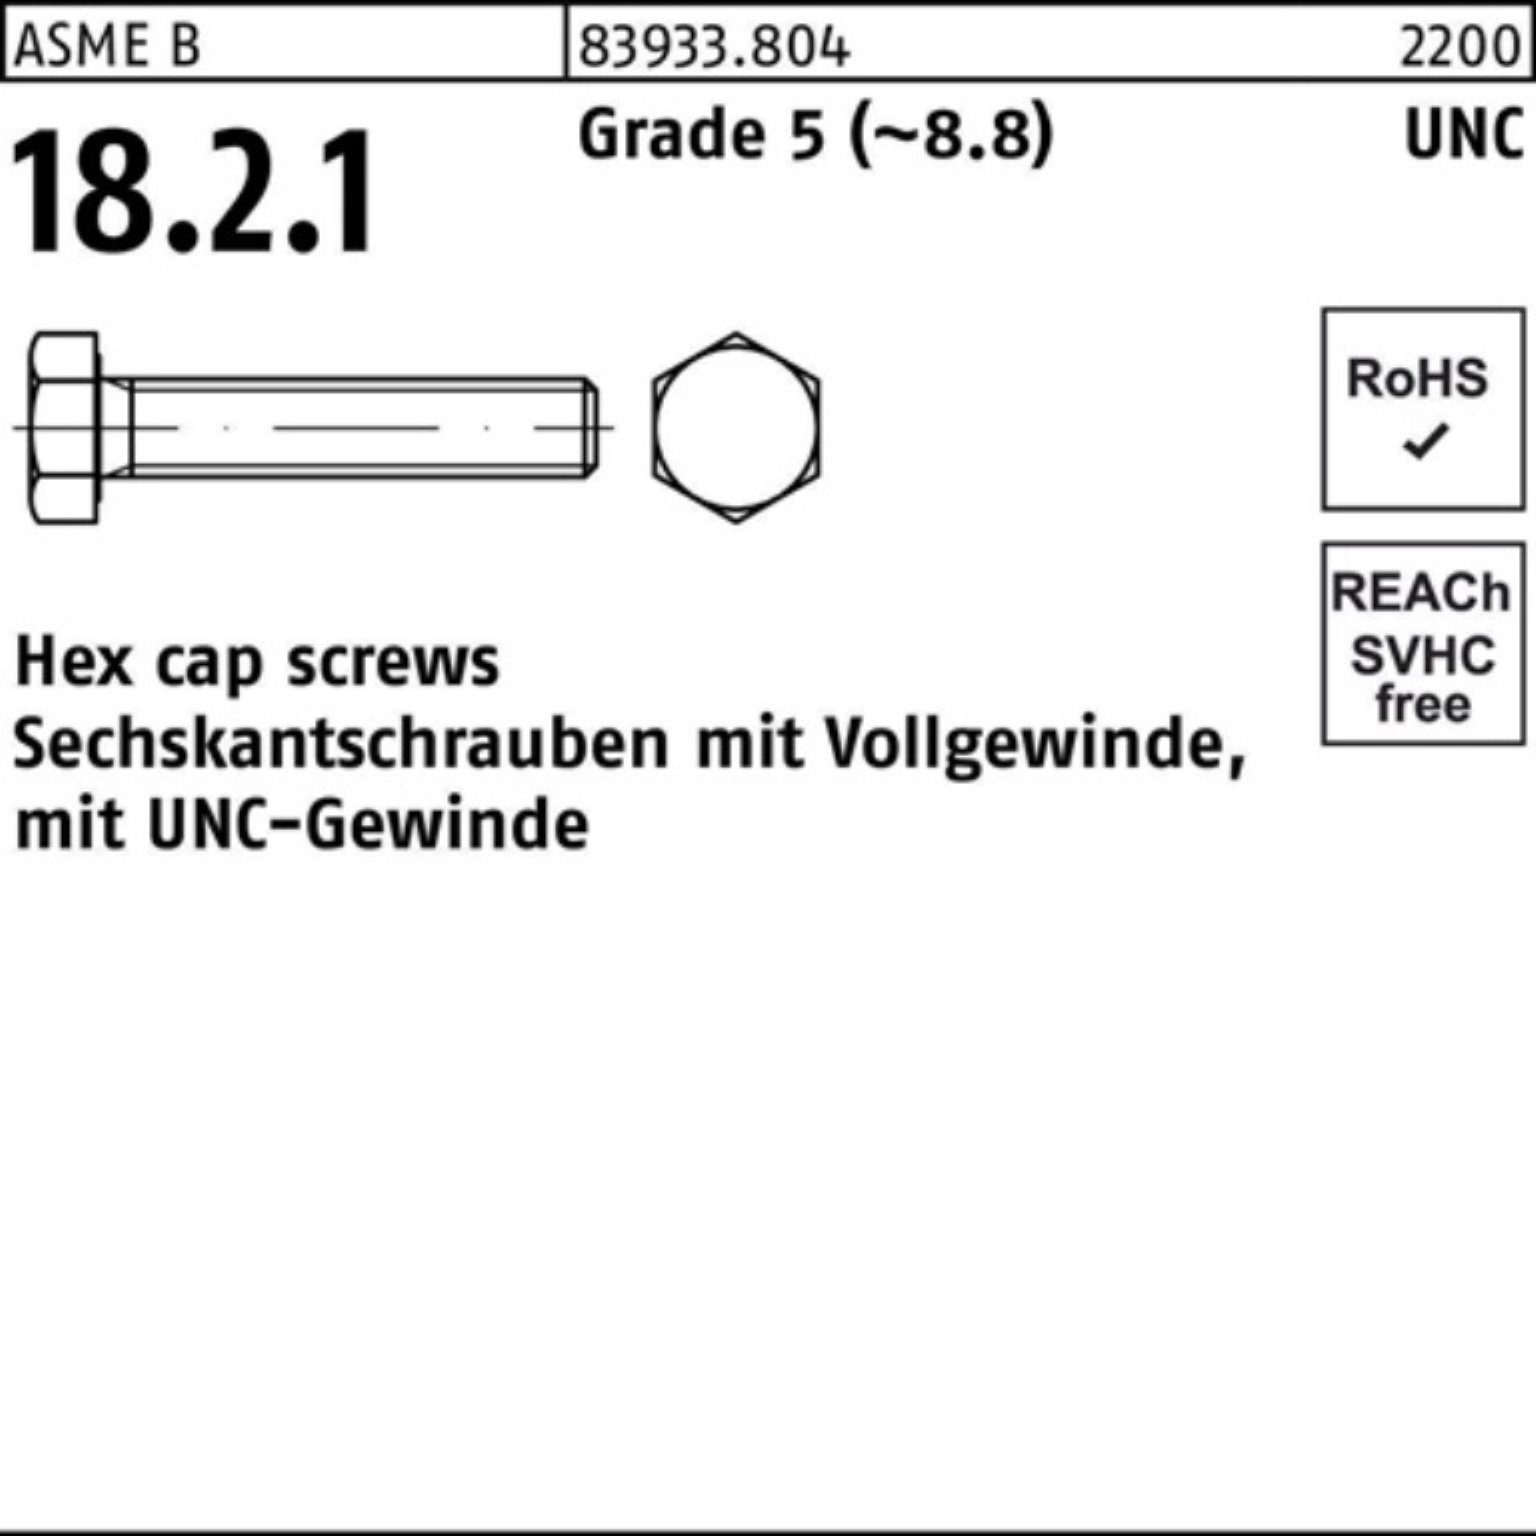 Pack VG Reyher R 1/4x 83933 Grade 5 100er Sechskantschraube UNC-Gewinde Sechskantschraube 7/8